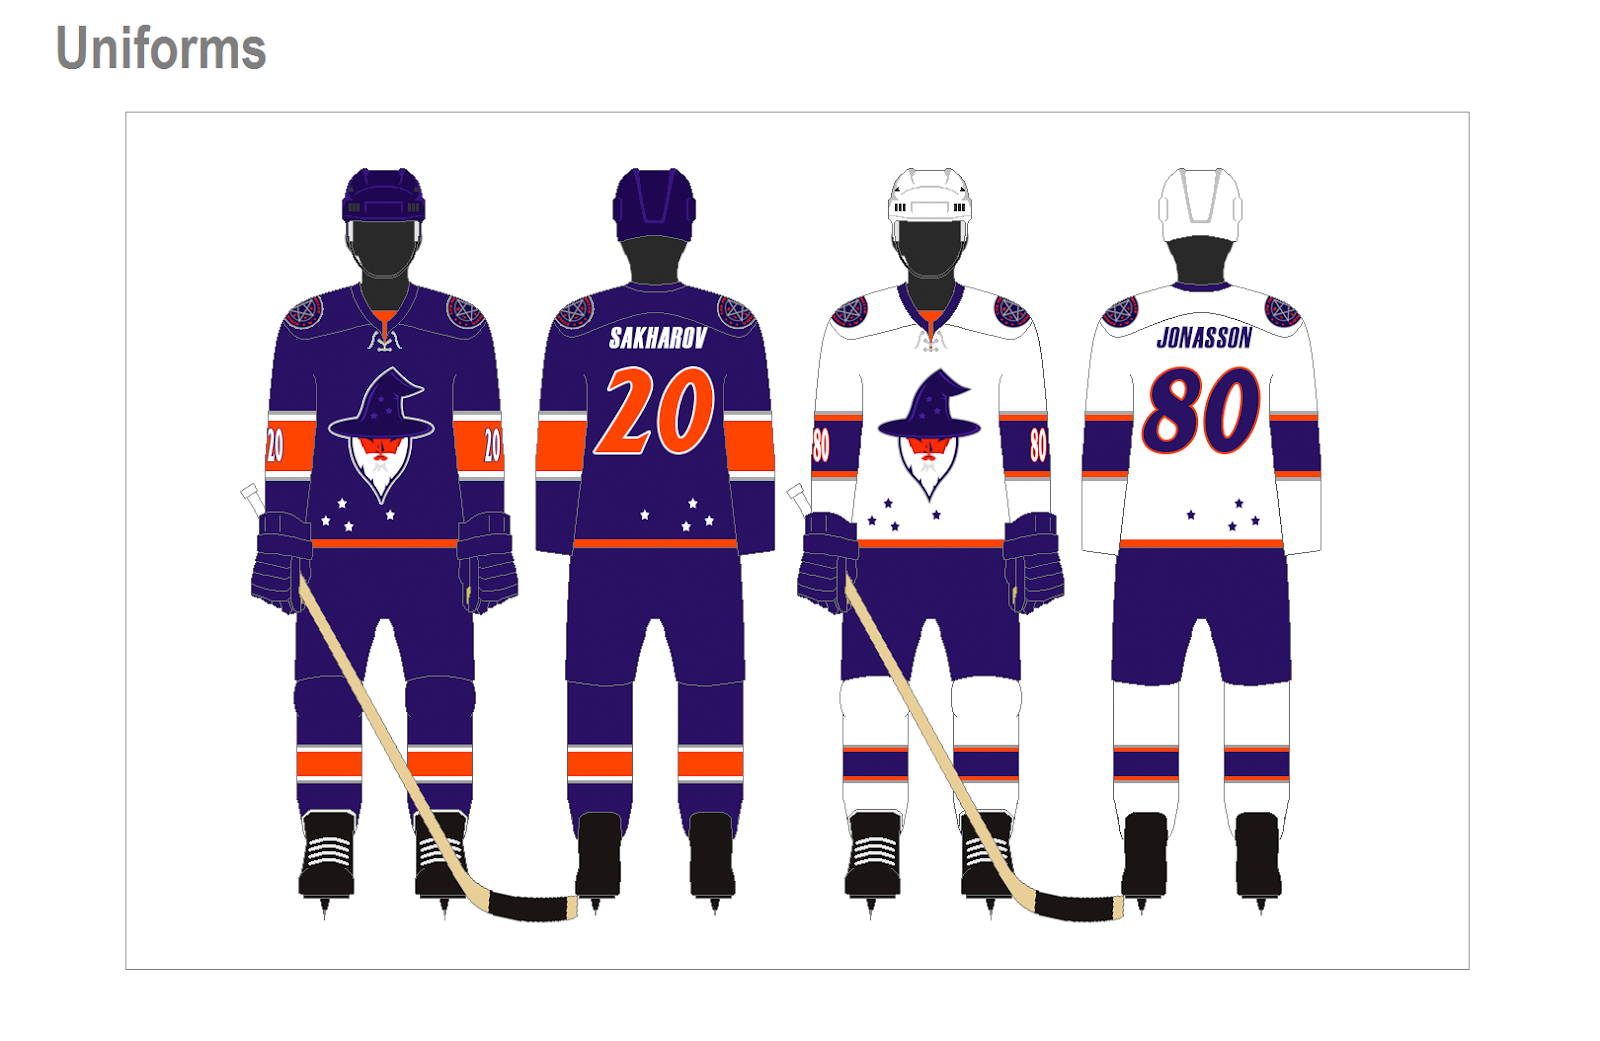 NHL unveils new uniforms for entire league